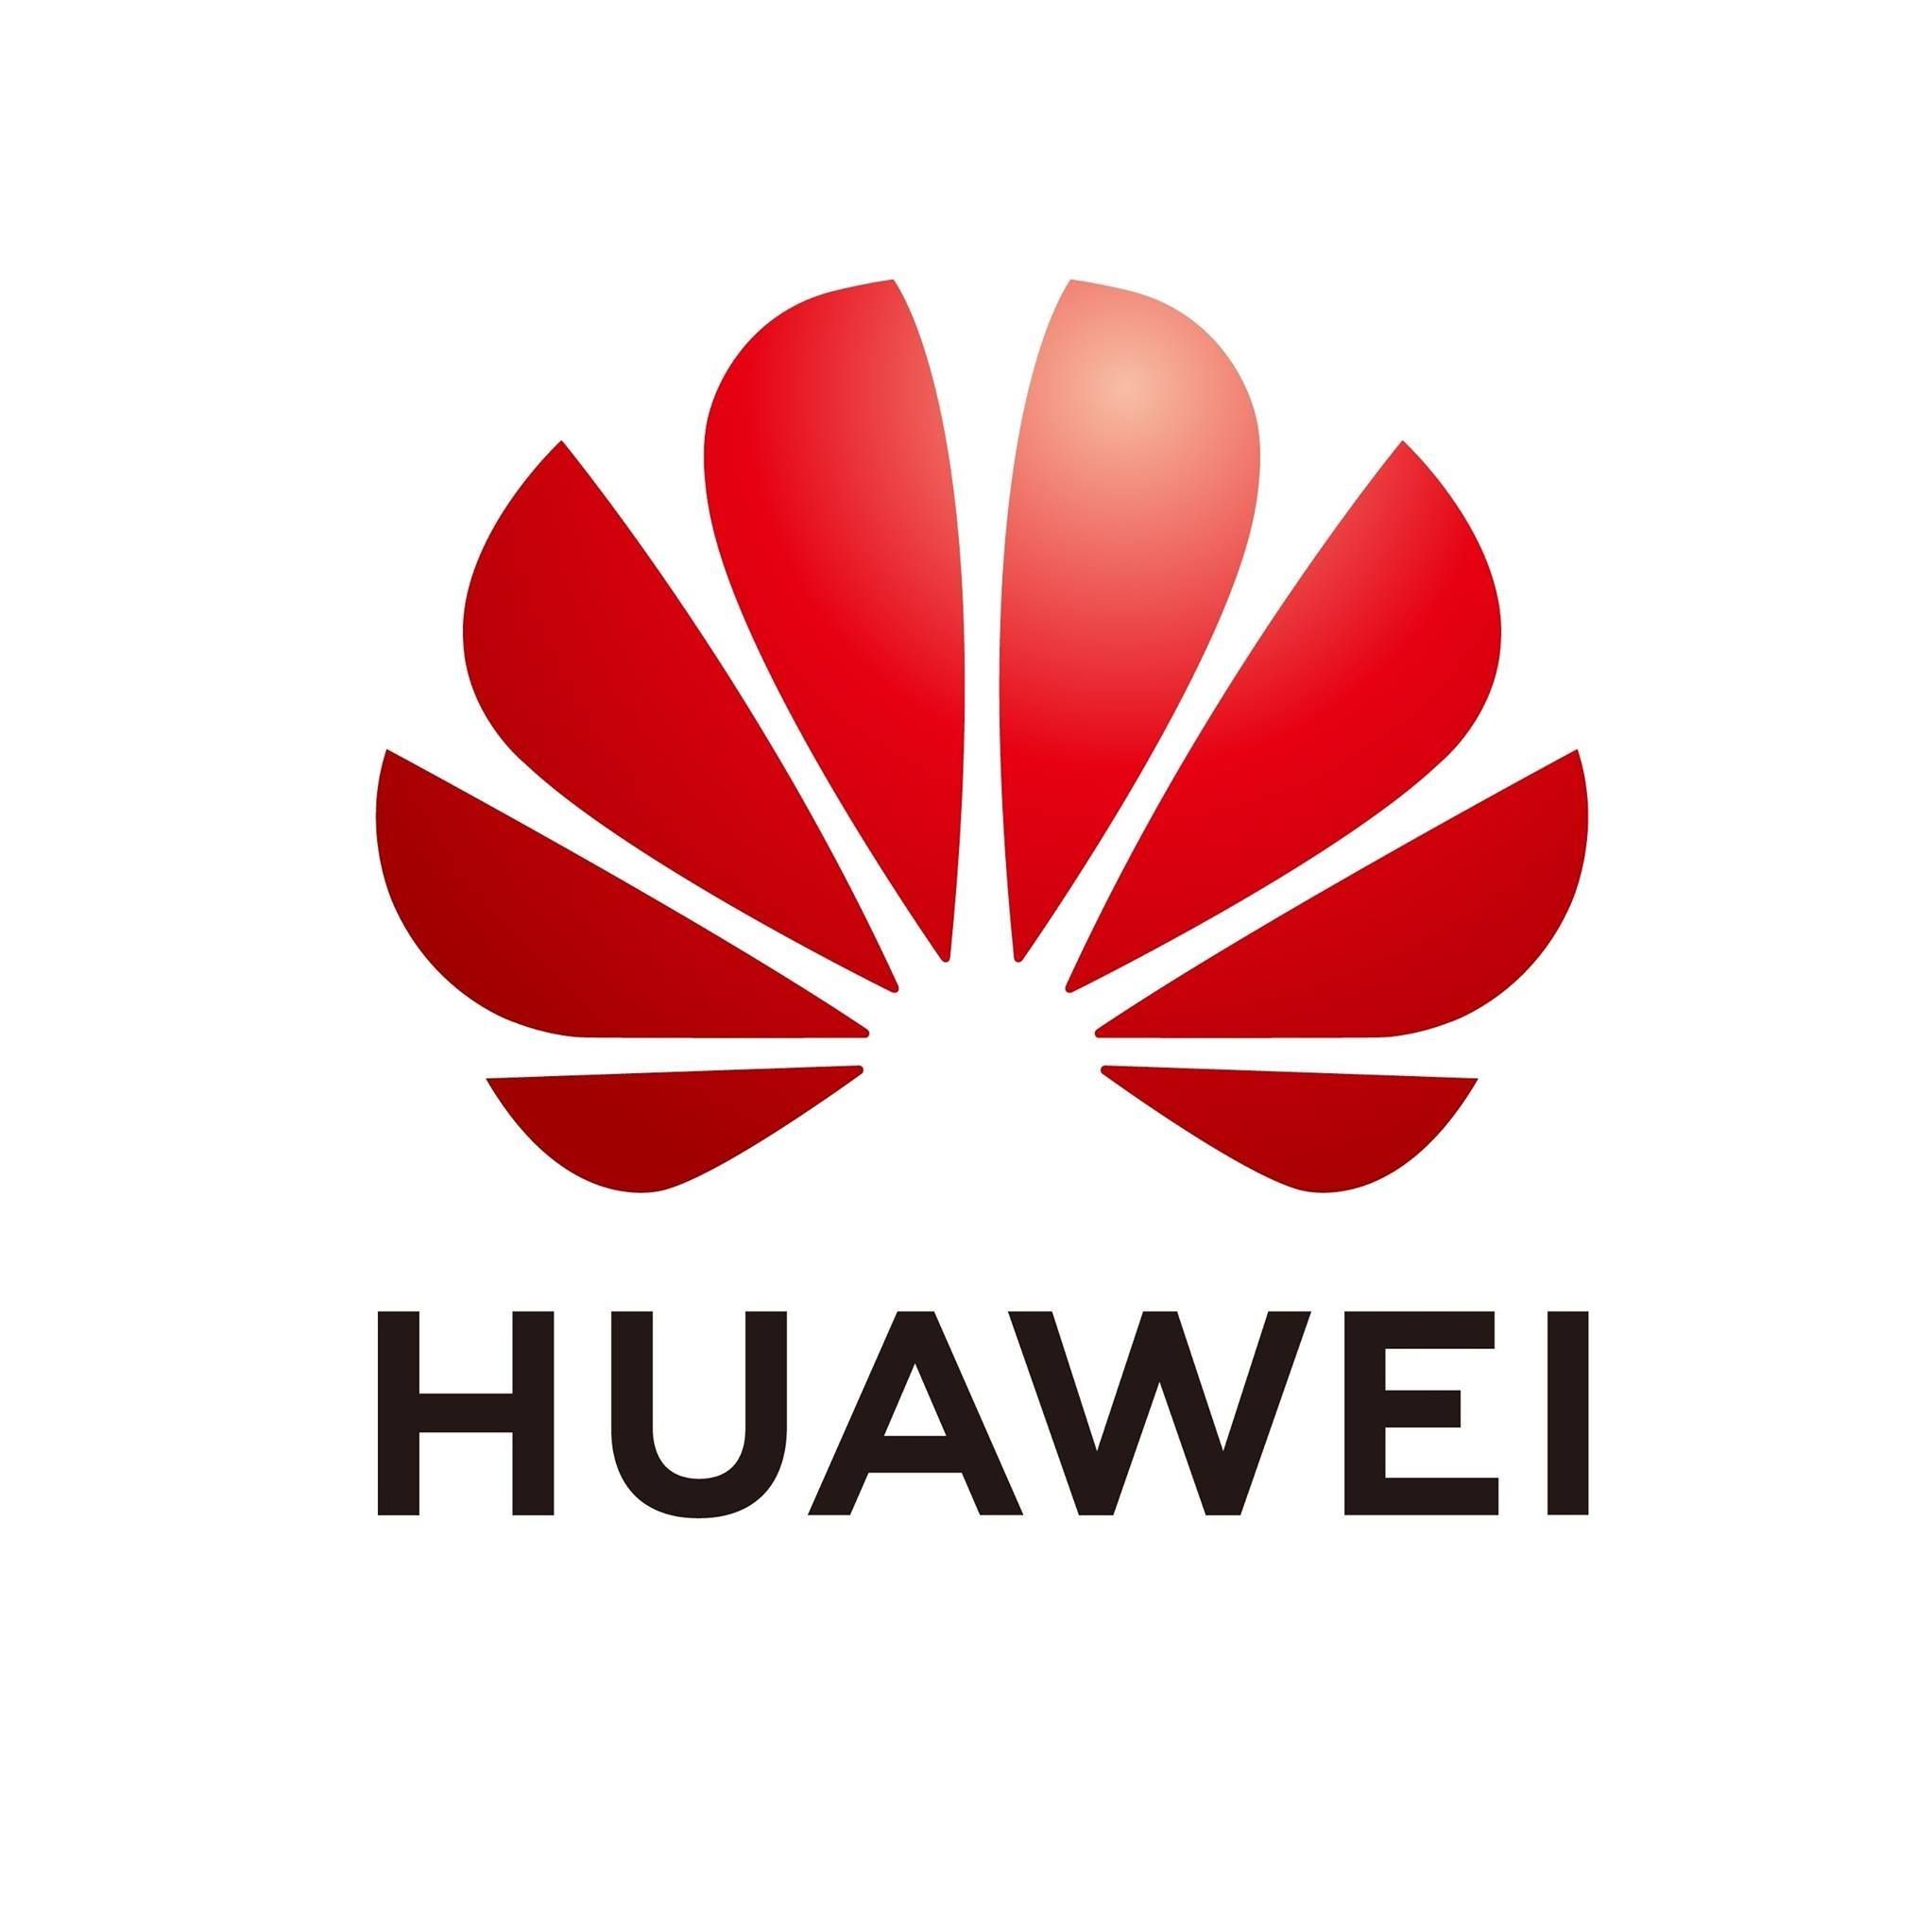 Huawei відкидає звинувачення Міноборони Литви щодо безпеки свого додатку